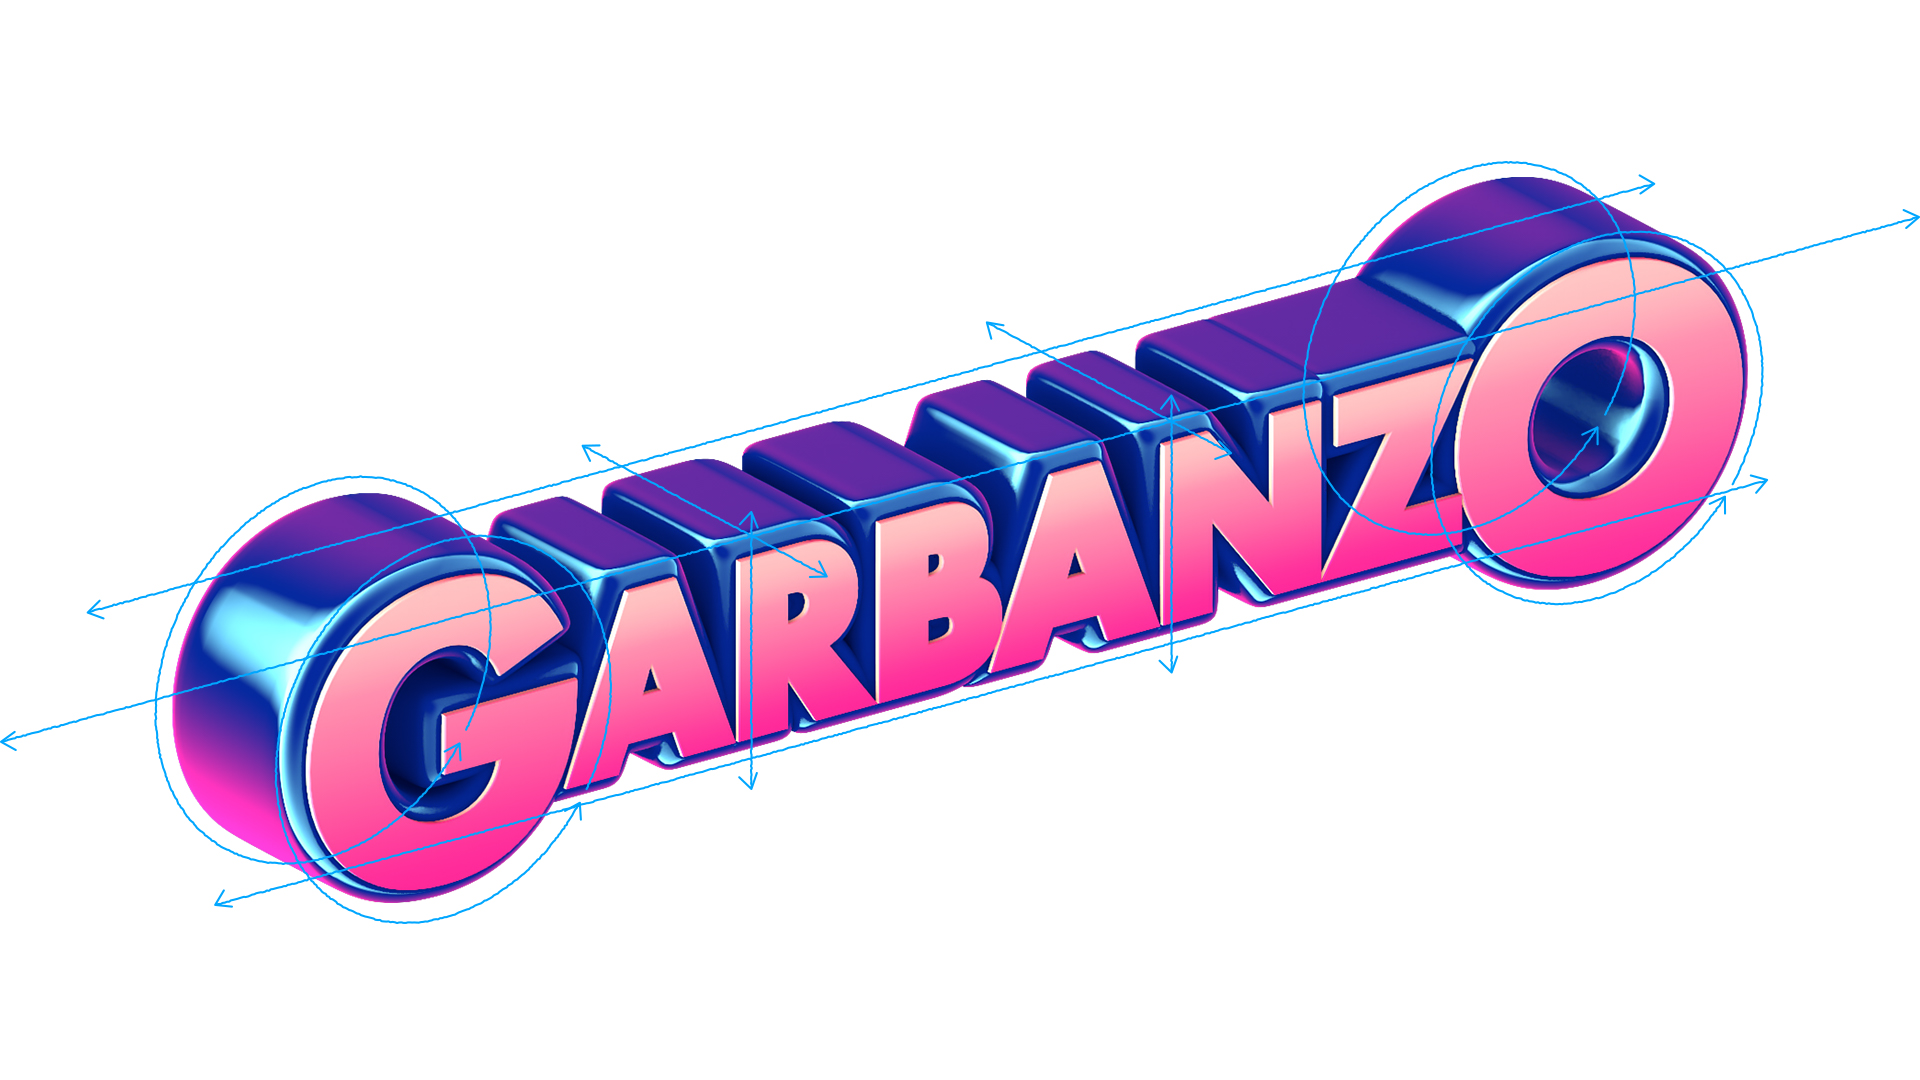 Garbanzo Rebrand 570